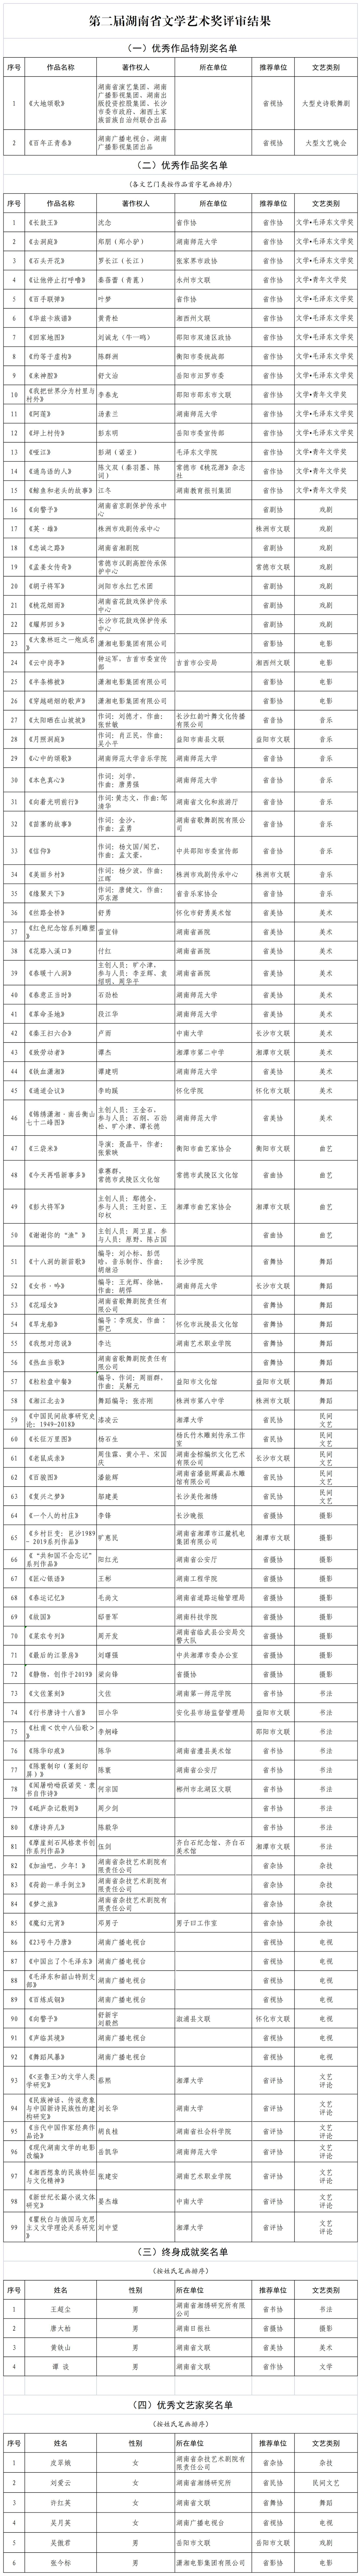 著作权人：第二届湖南省文学艺术奖优秀作品终评名单（公示）_A2F125.jpg